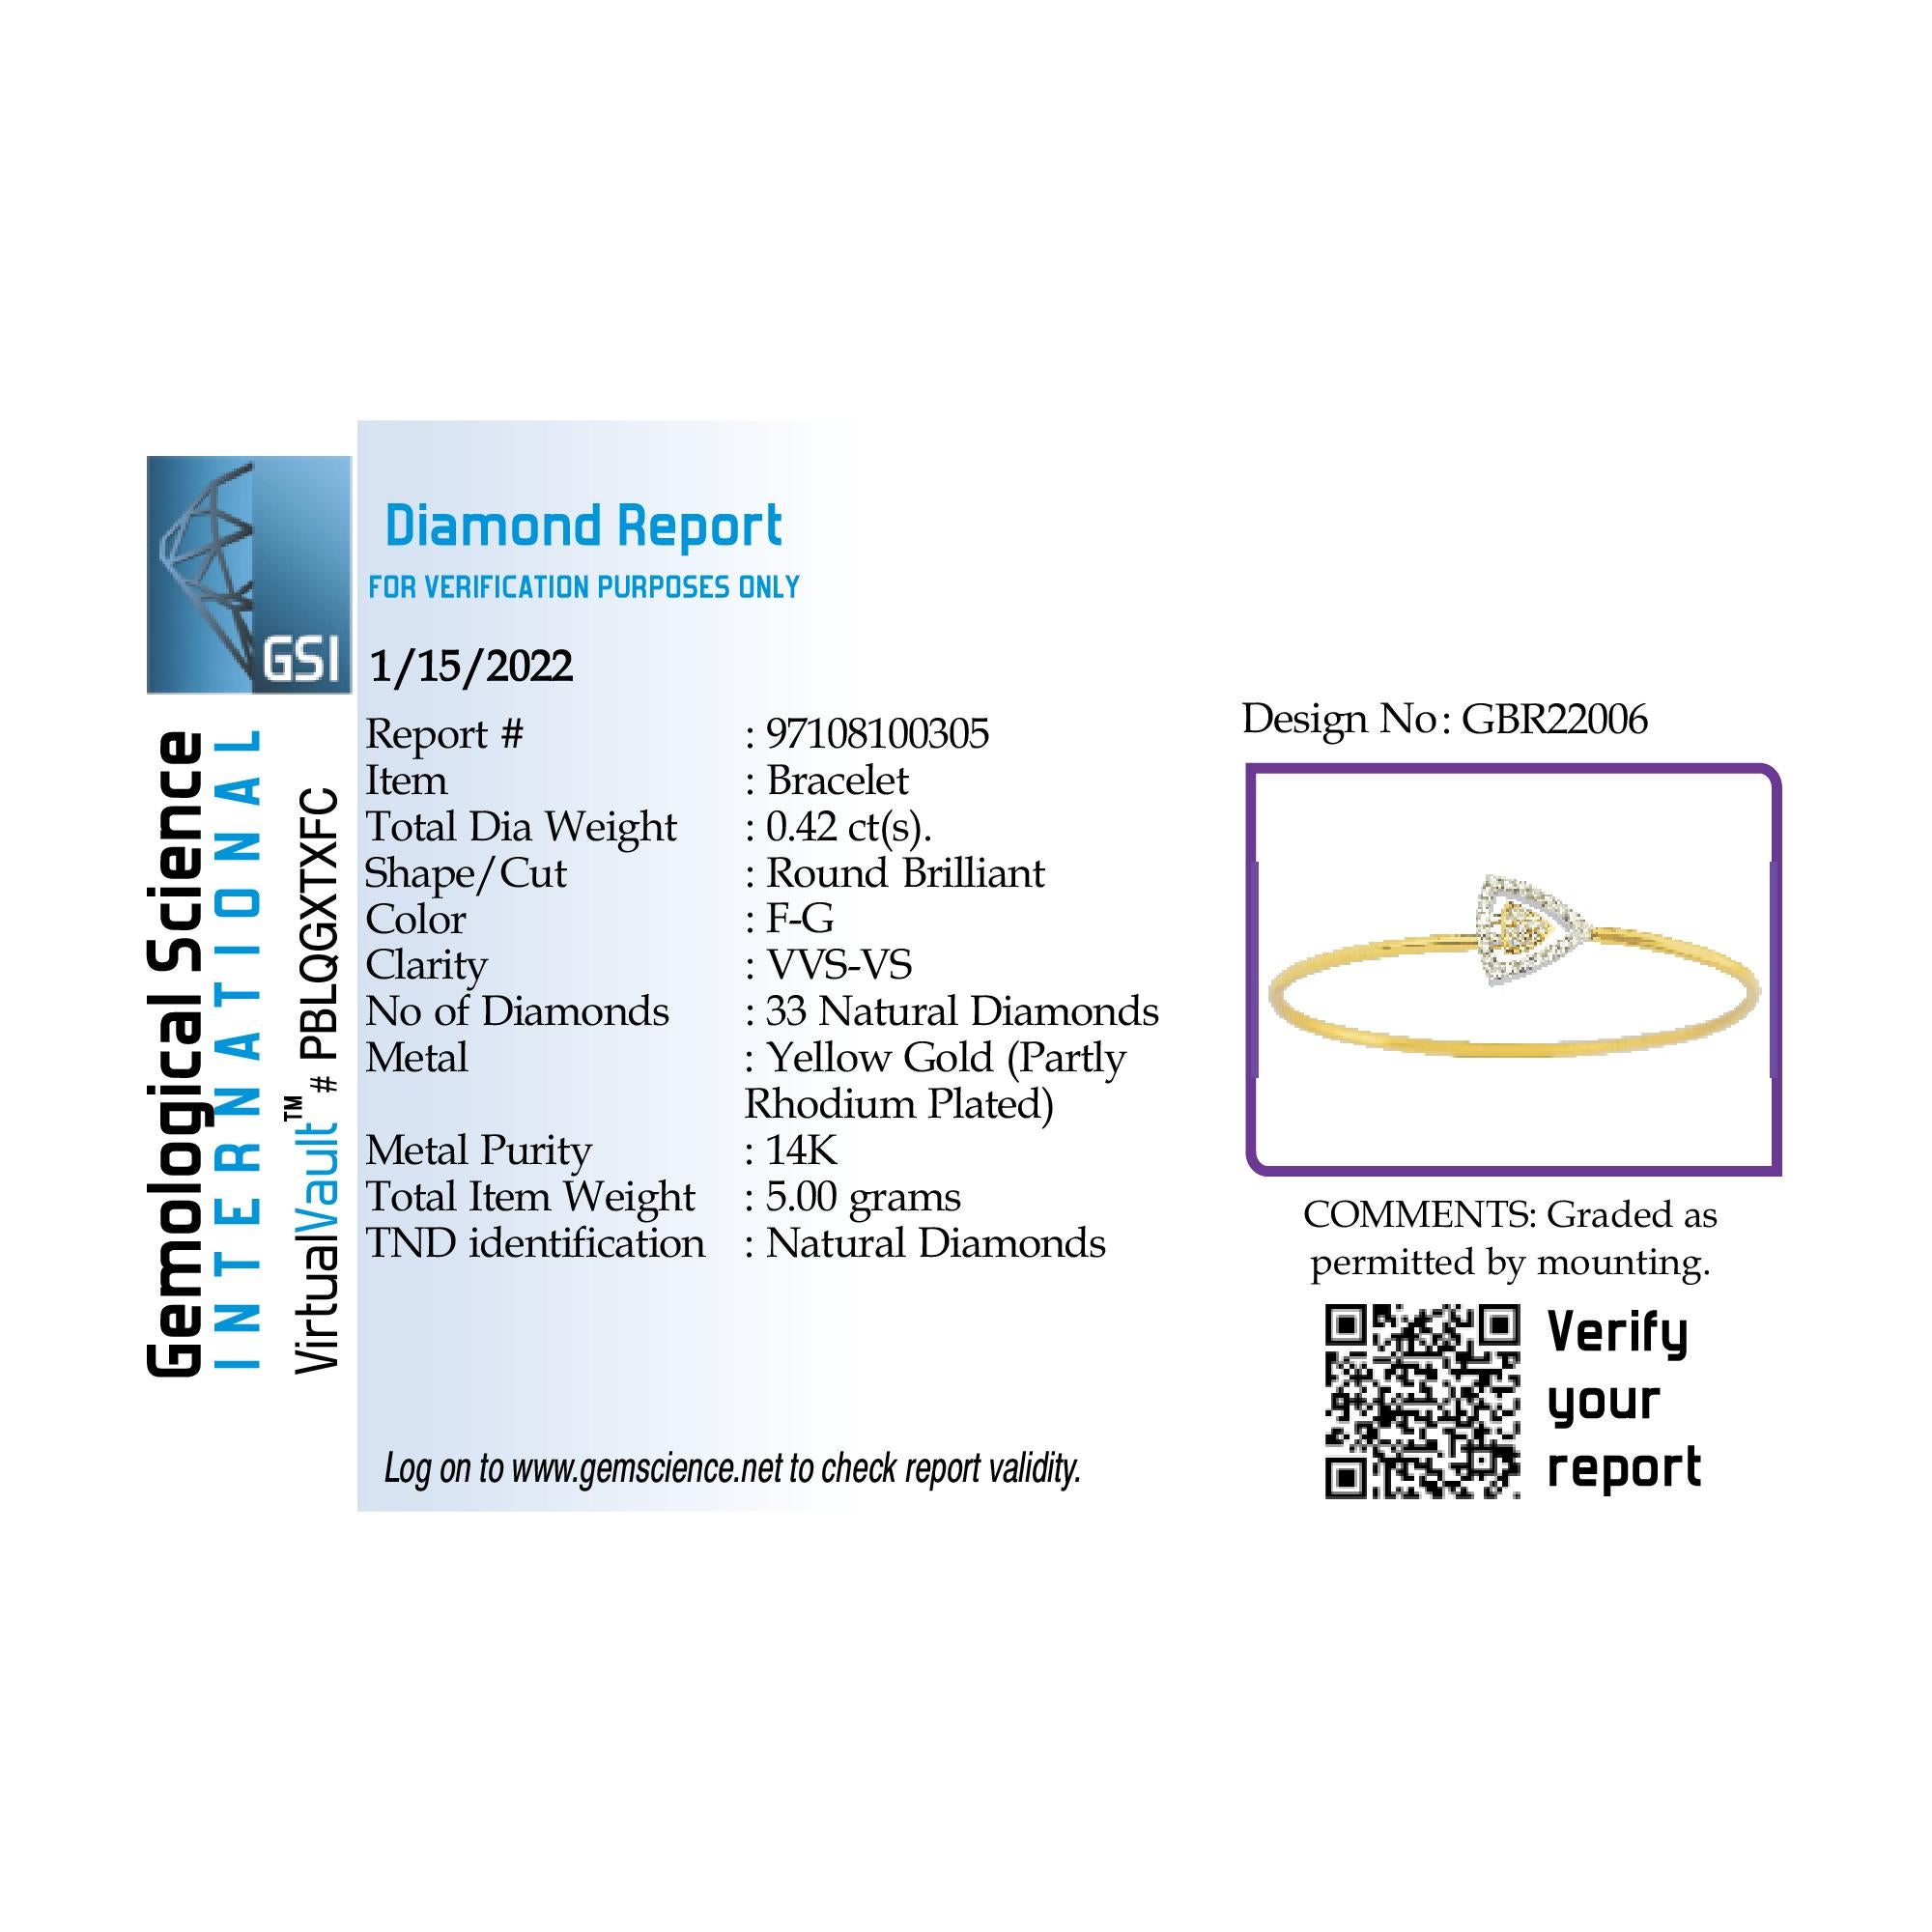 Fabriqué en or jaune 14 carats de 5,00 grammes, il contient 33 diamants ronds d'un total de 0,42 carats de couleur F-G et de pureté VVS-VS.

UNE ESSENCE CONTEMPORAINE ET INTEMPORELLE : Fabriqué en 14 carats/18 carats avec 100% de diamant naturel et